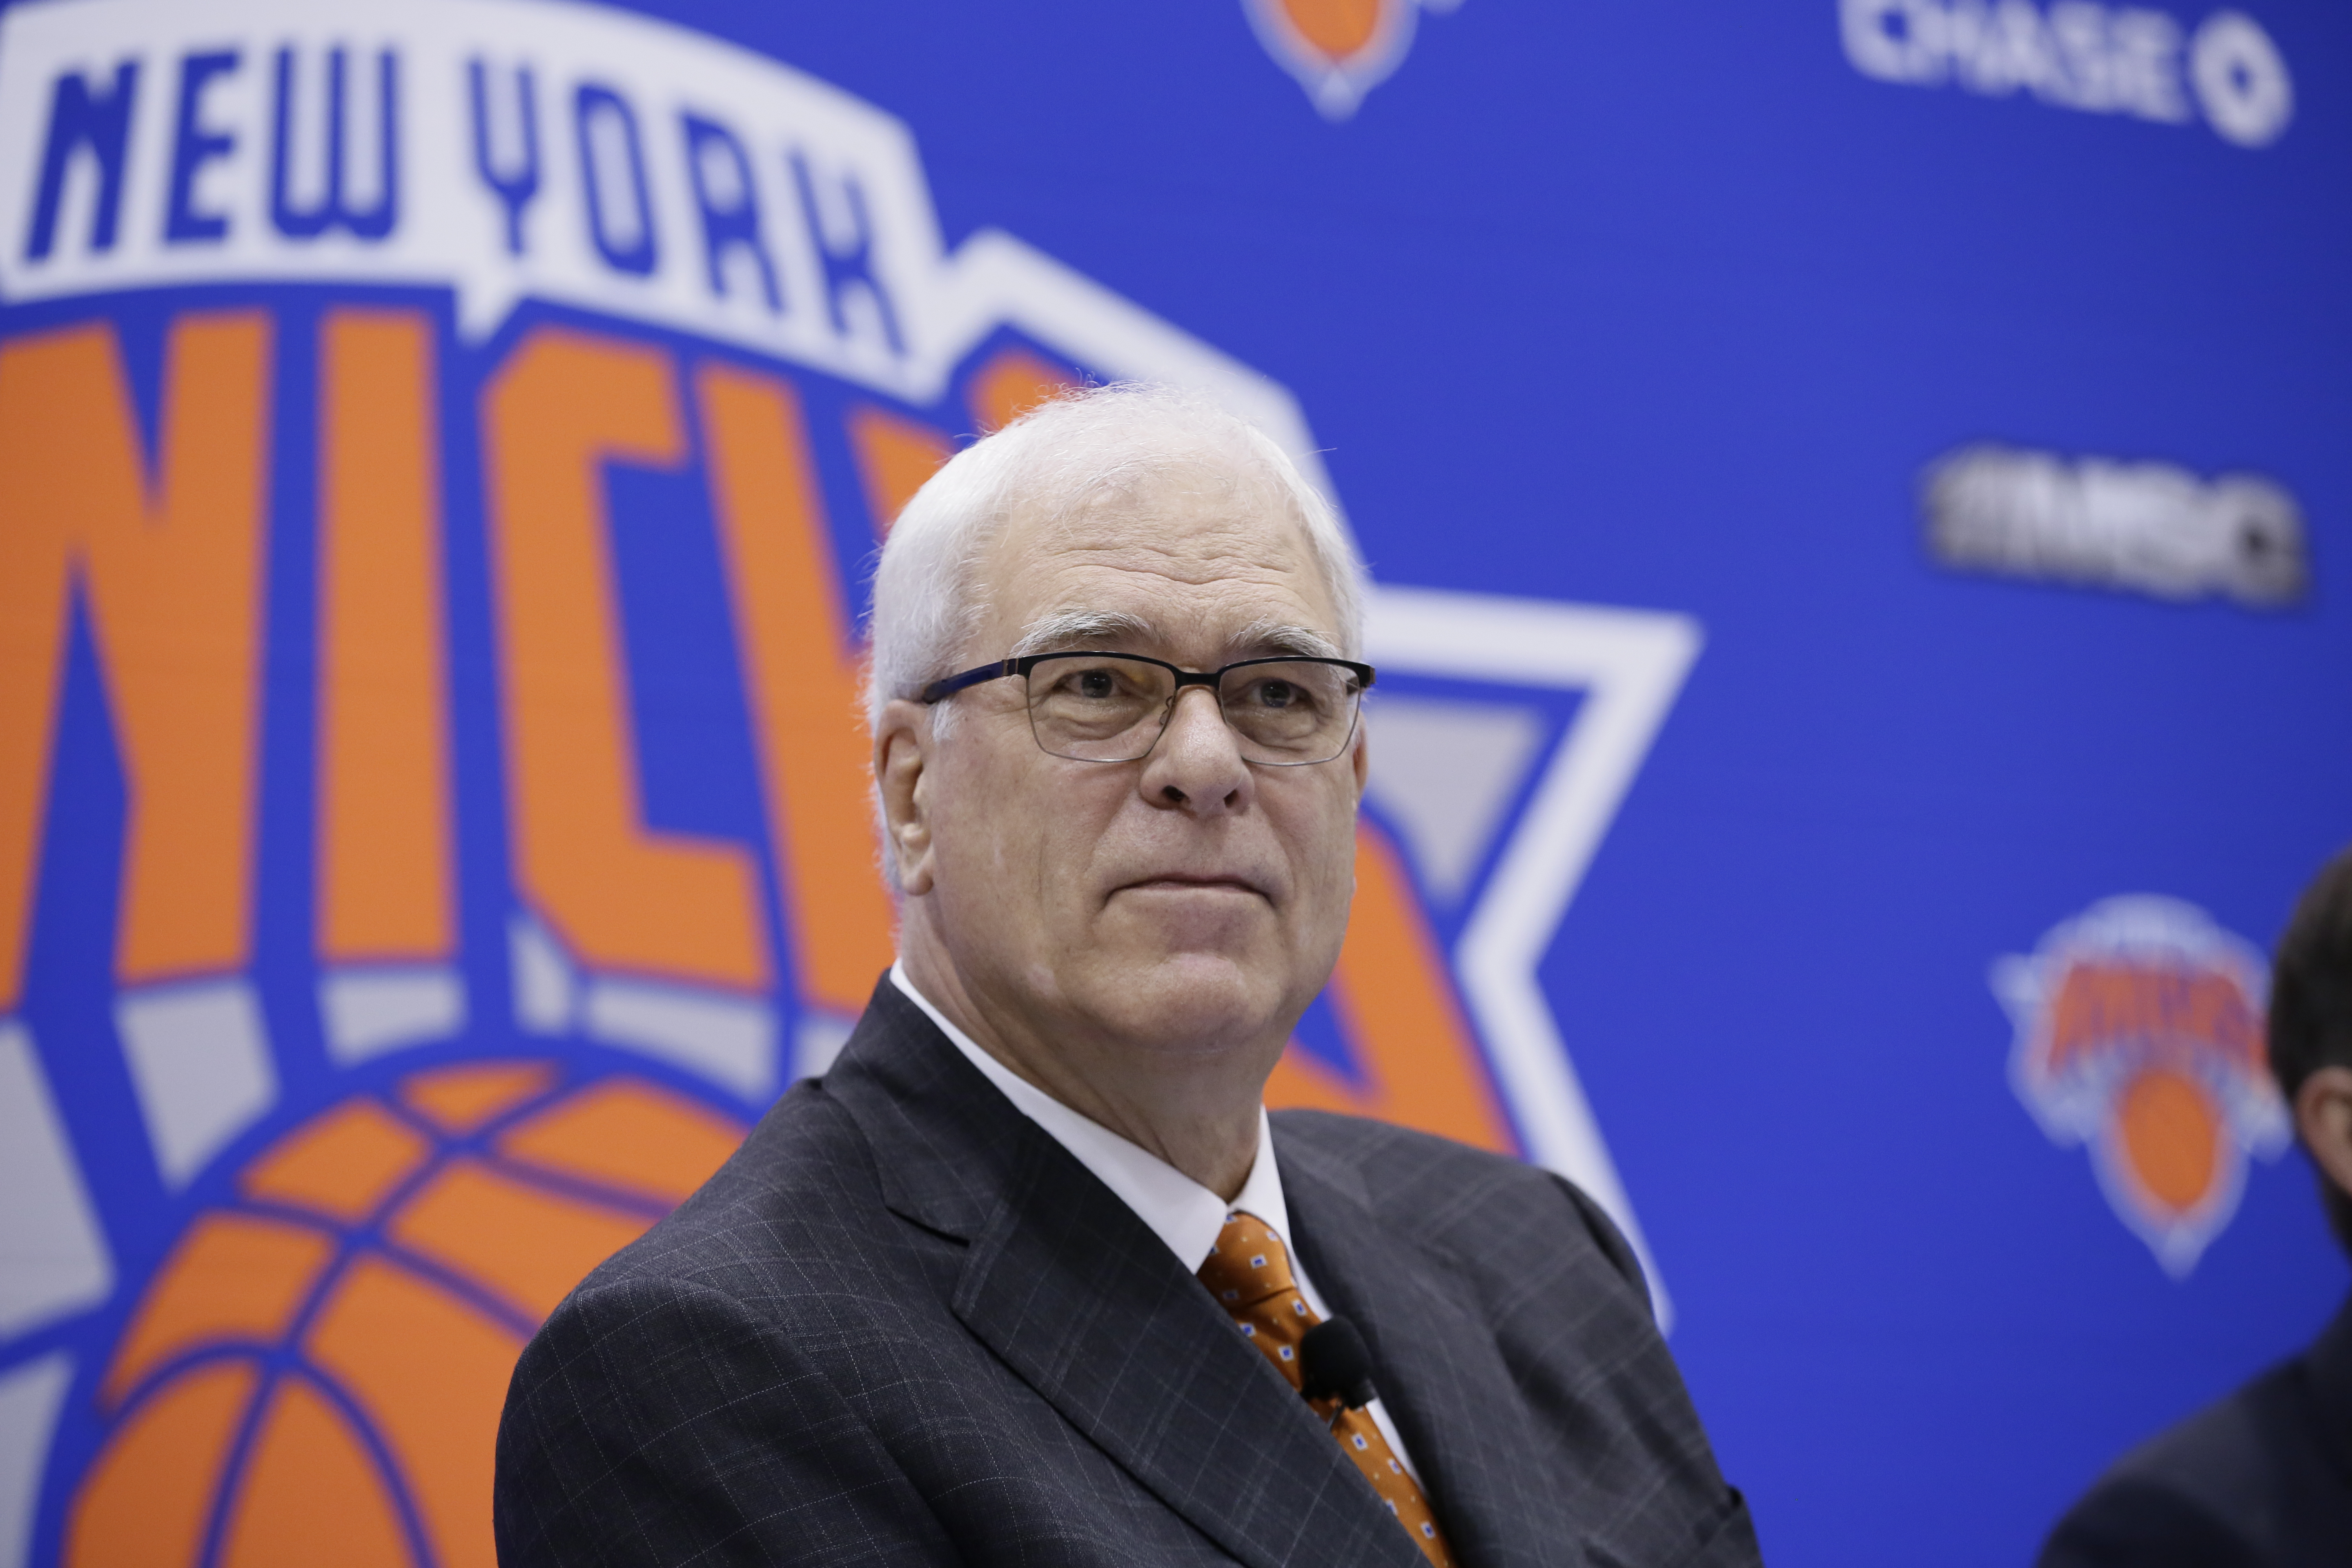 Phil Jackson, New York Knicks